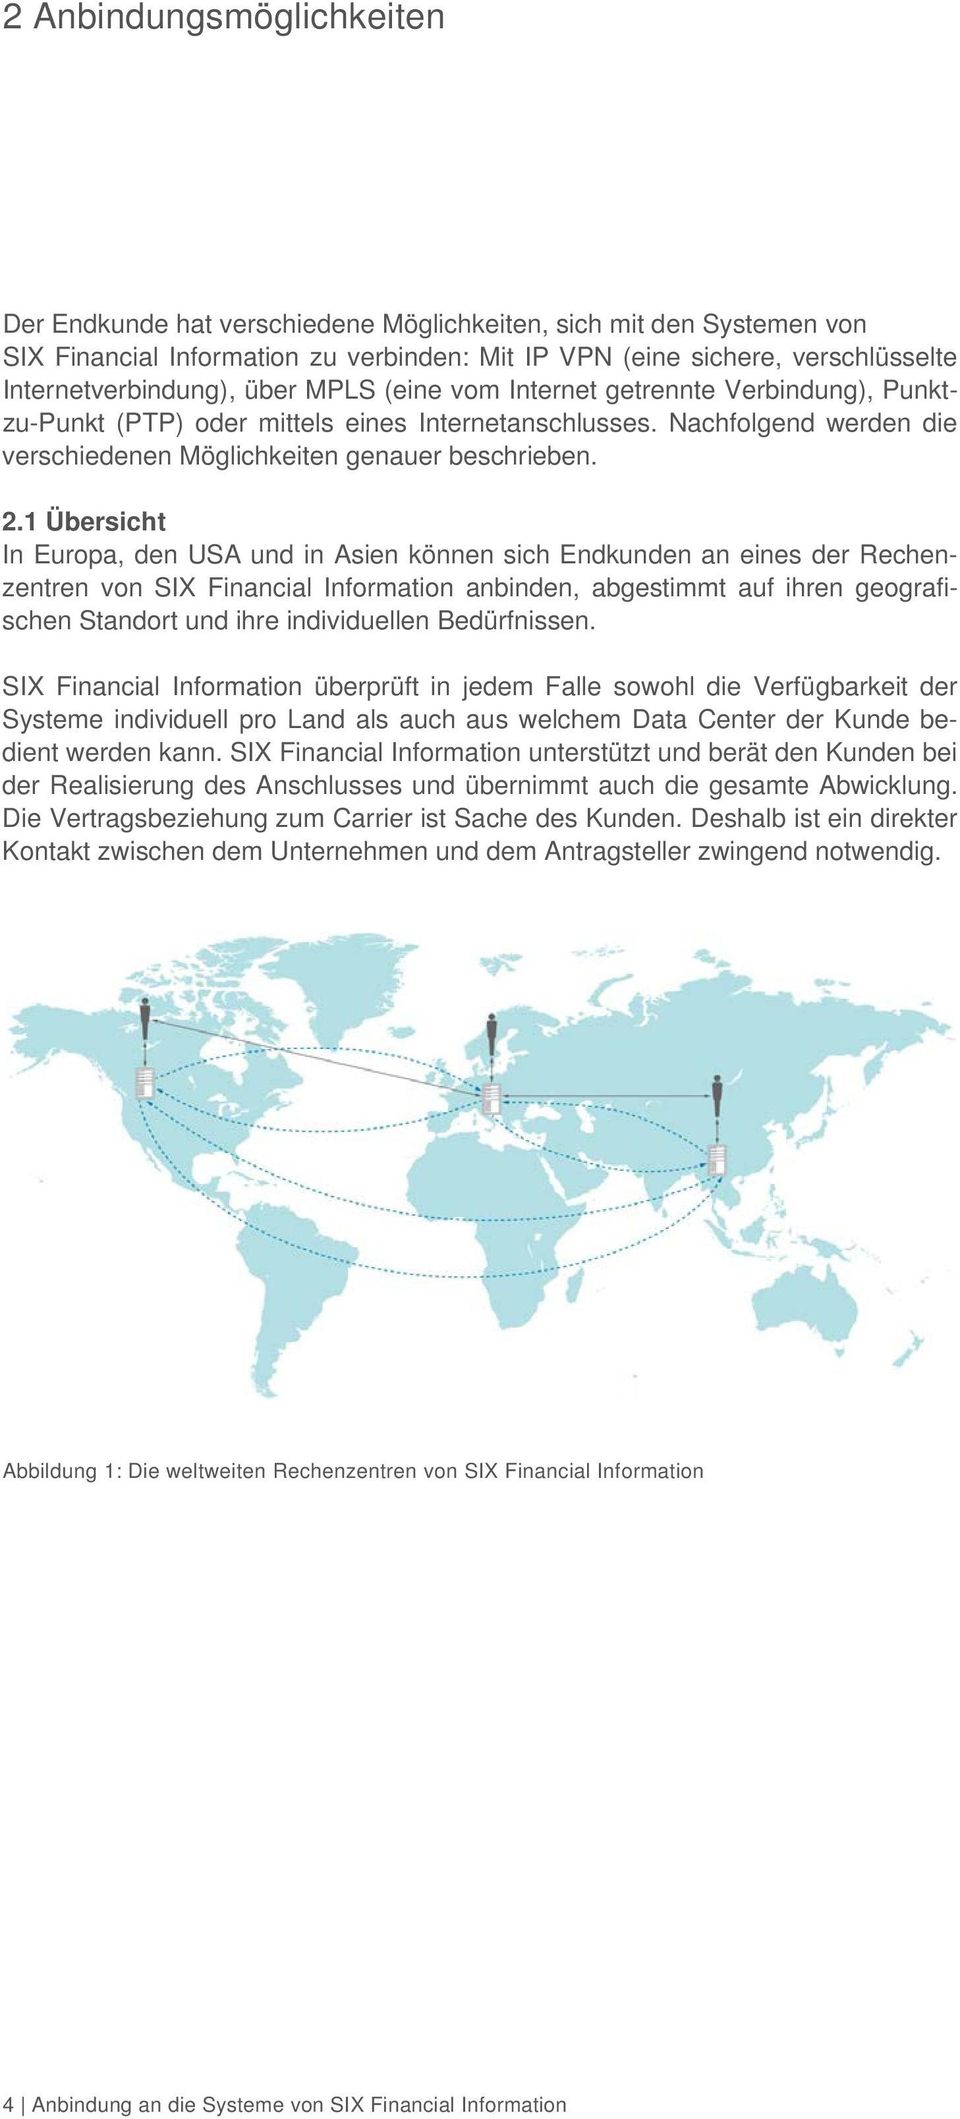 1 Übersicht In Europa, den USA und in Asien können sich Endkunden an eines der Rechenzentren von SIX Financial Information anbinden, abgestimmt auf ihren geografischen Standort und ihre individuellen